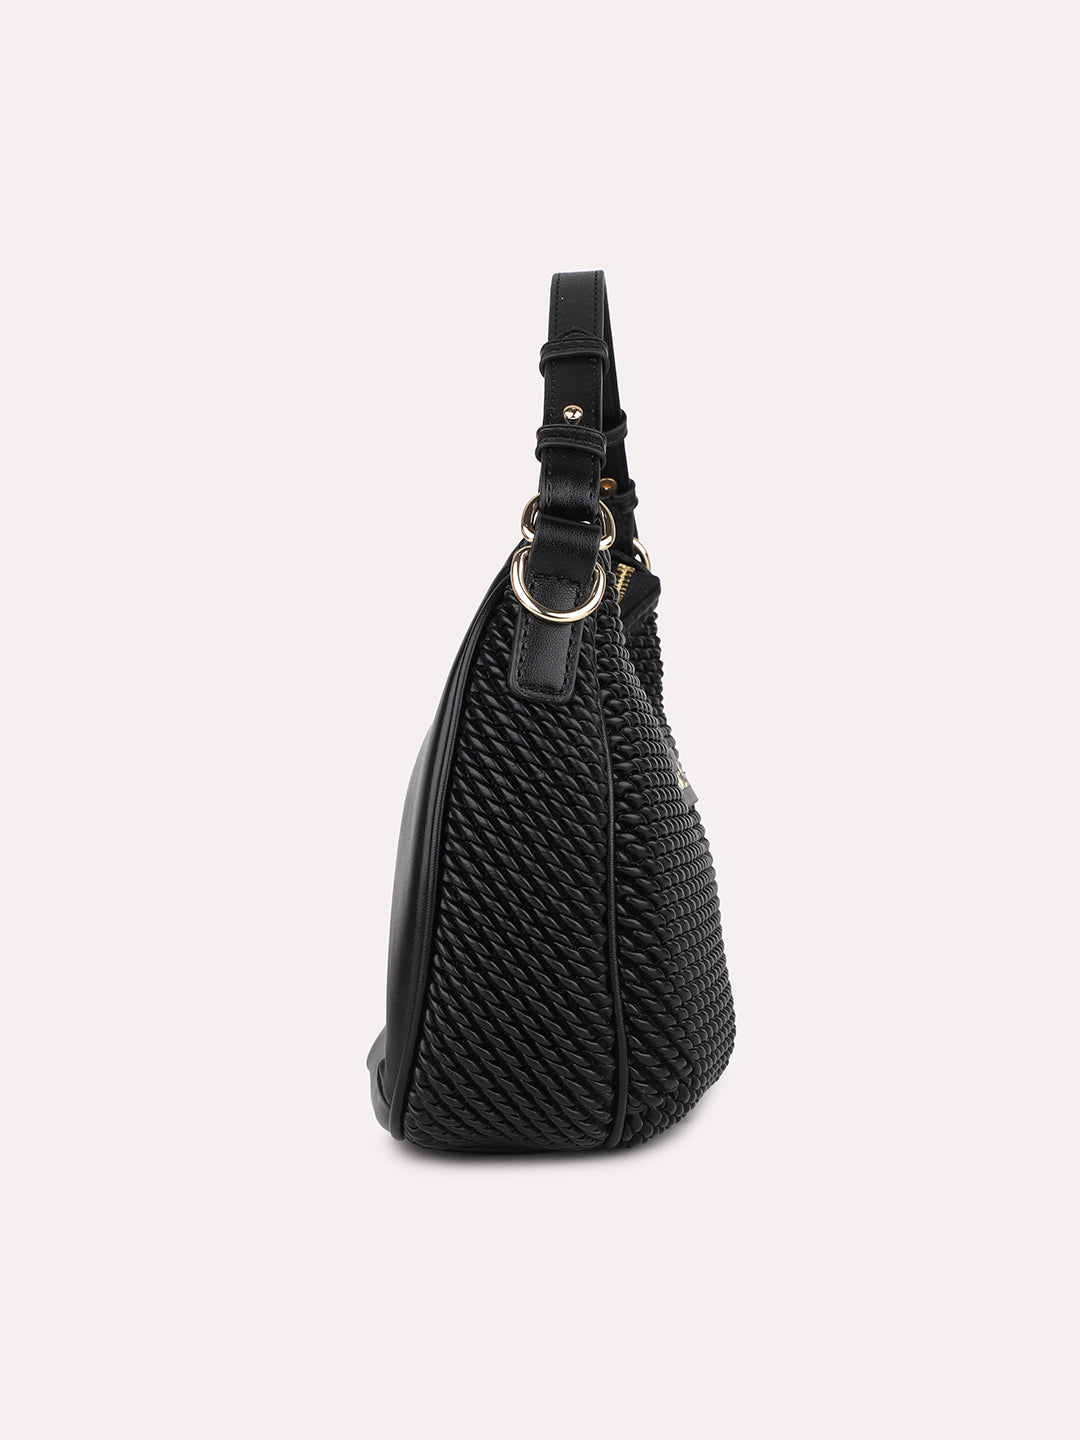 Quilt Black Structured Handheld Hobo Bag